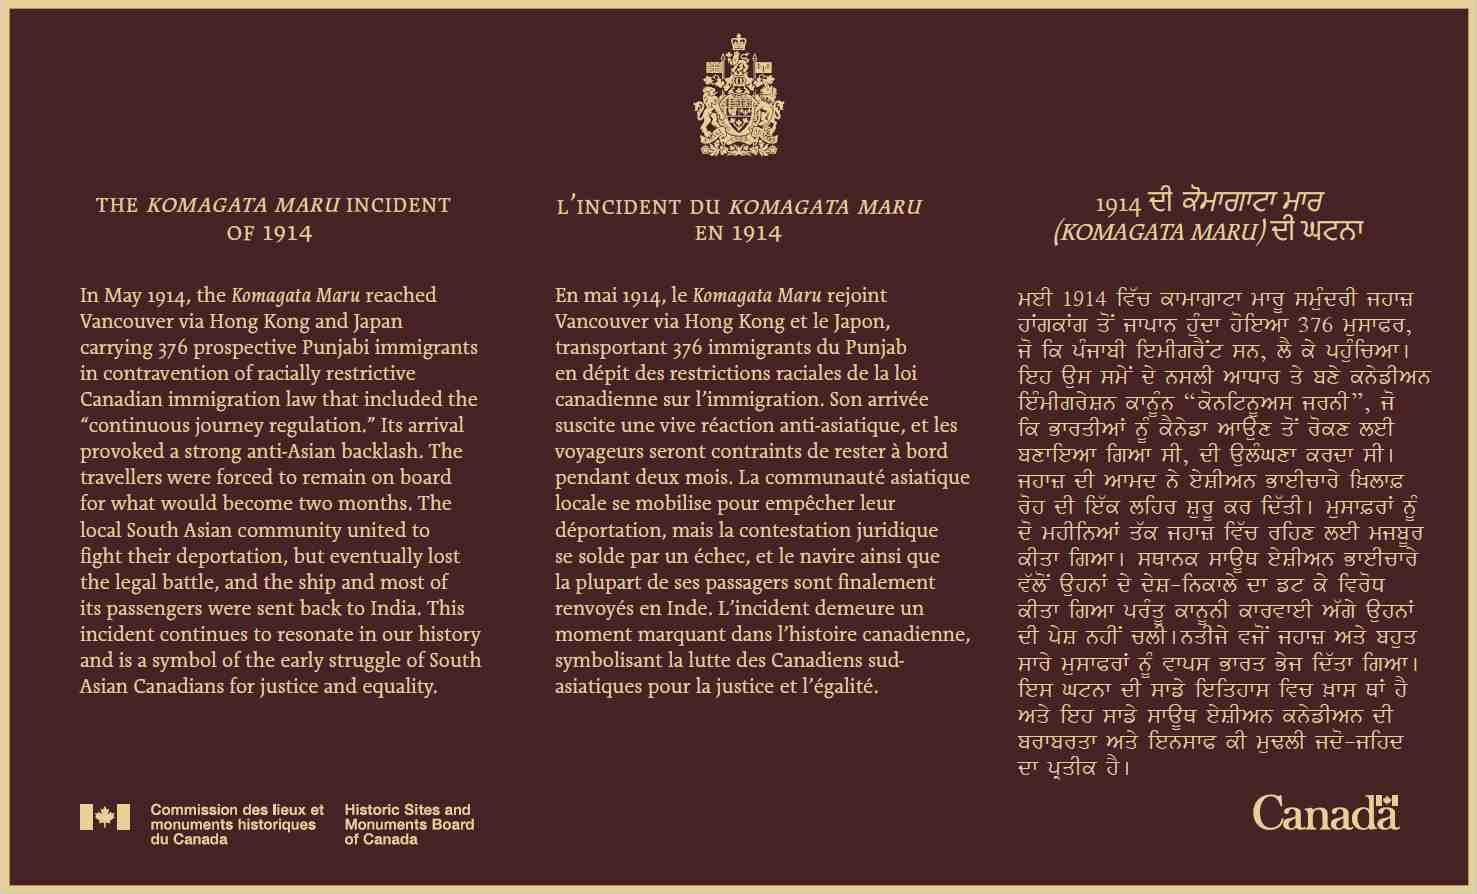 A bronze commemorative plaque in three languages